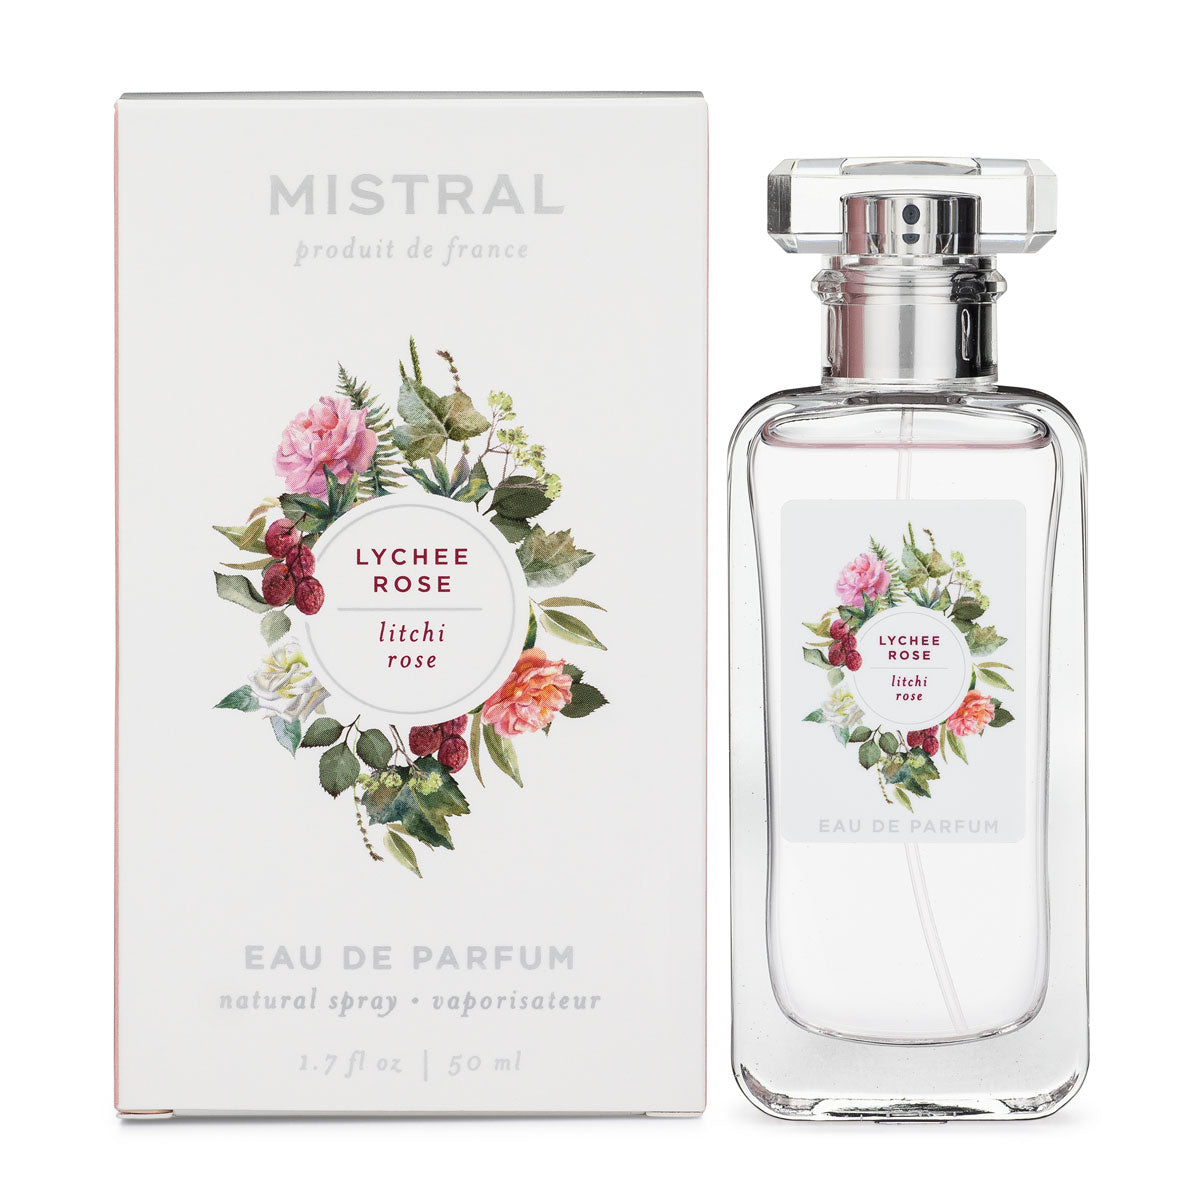 Mistral Lychee Rose Eau De Parfum